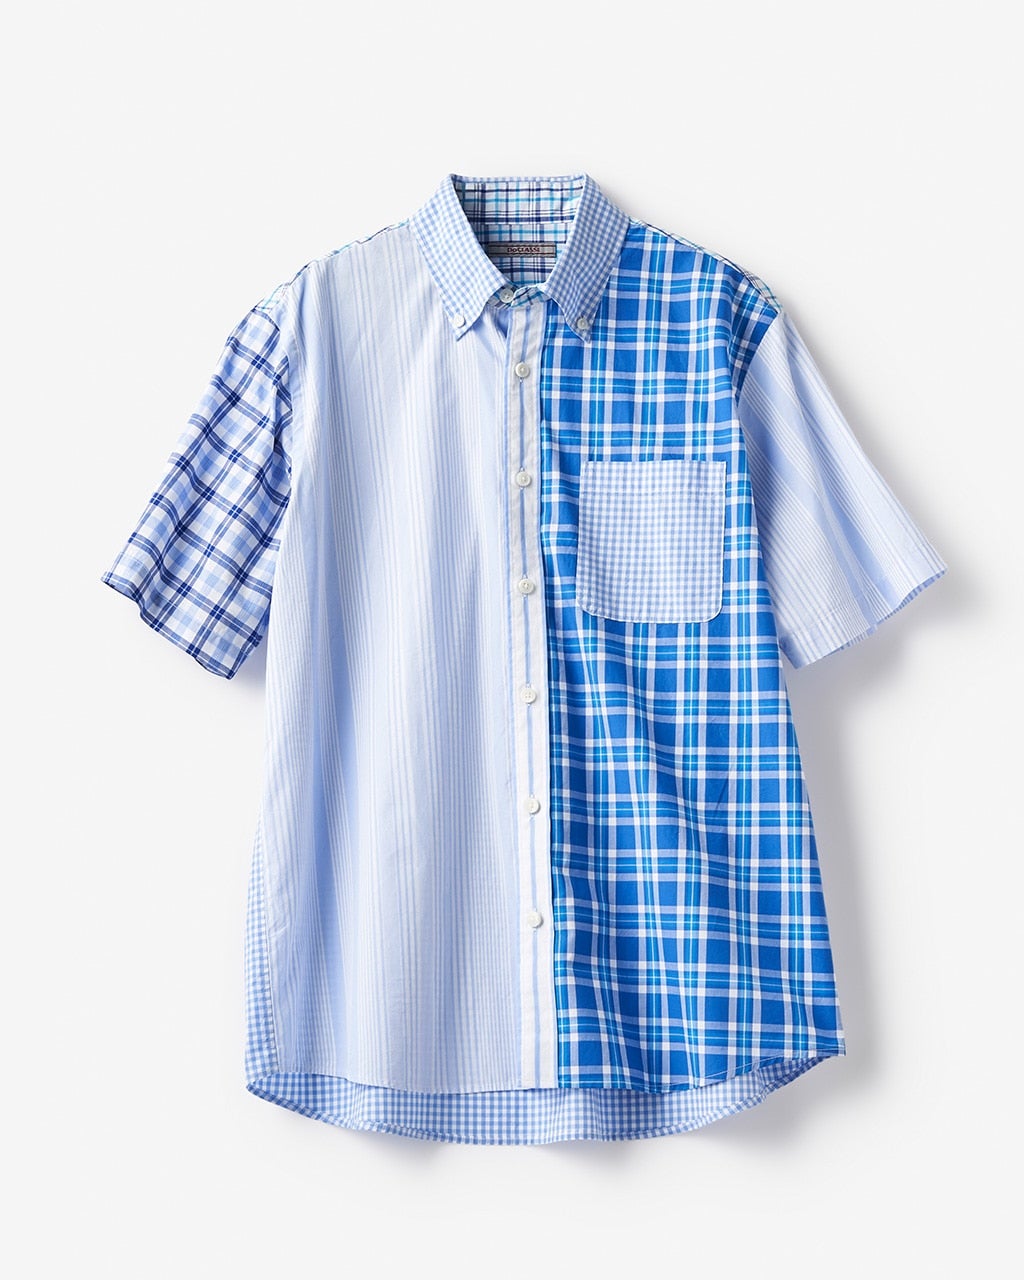 クレイジーパターン半袖シャツ/40代50代からのレディース・メンズ ...